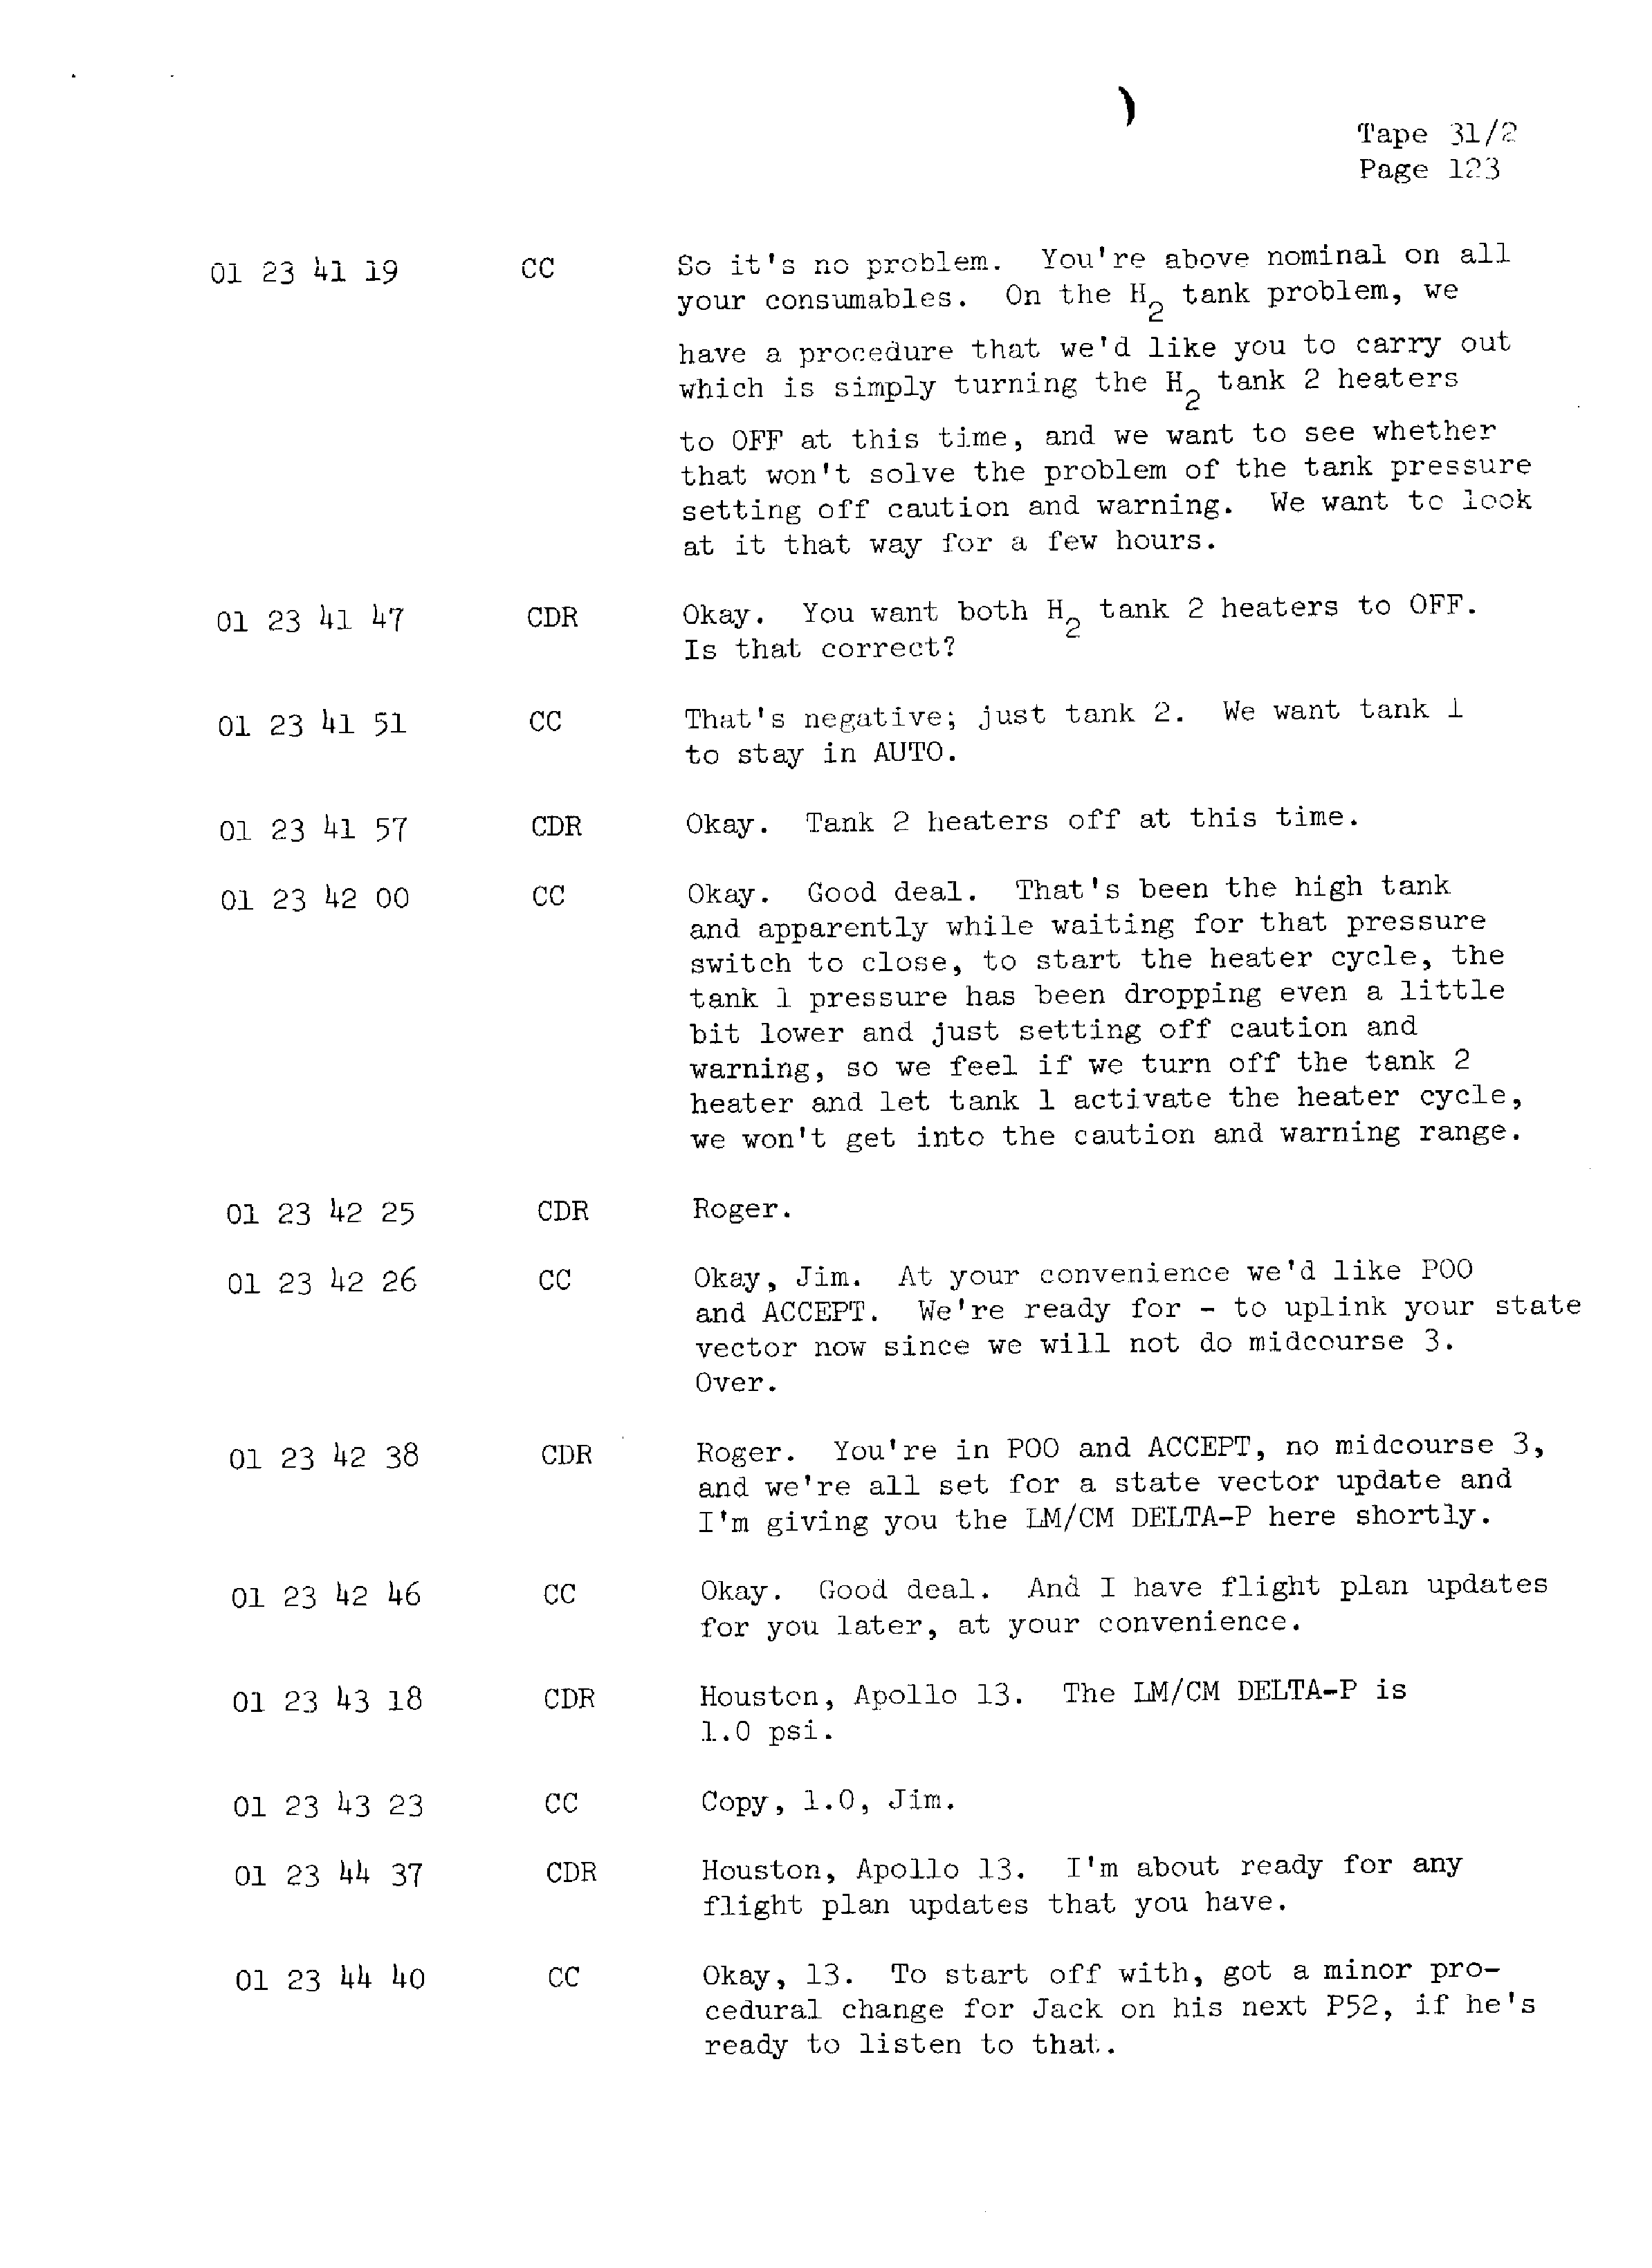 Page 130 of Apollo 13’s original transcript